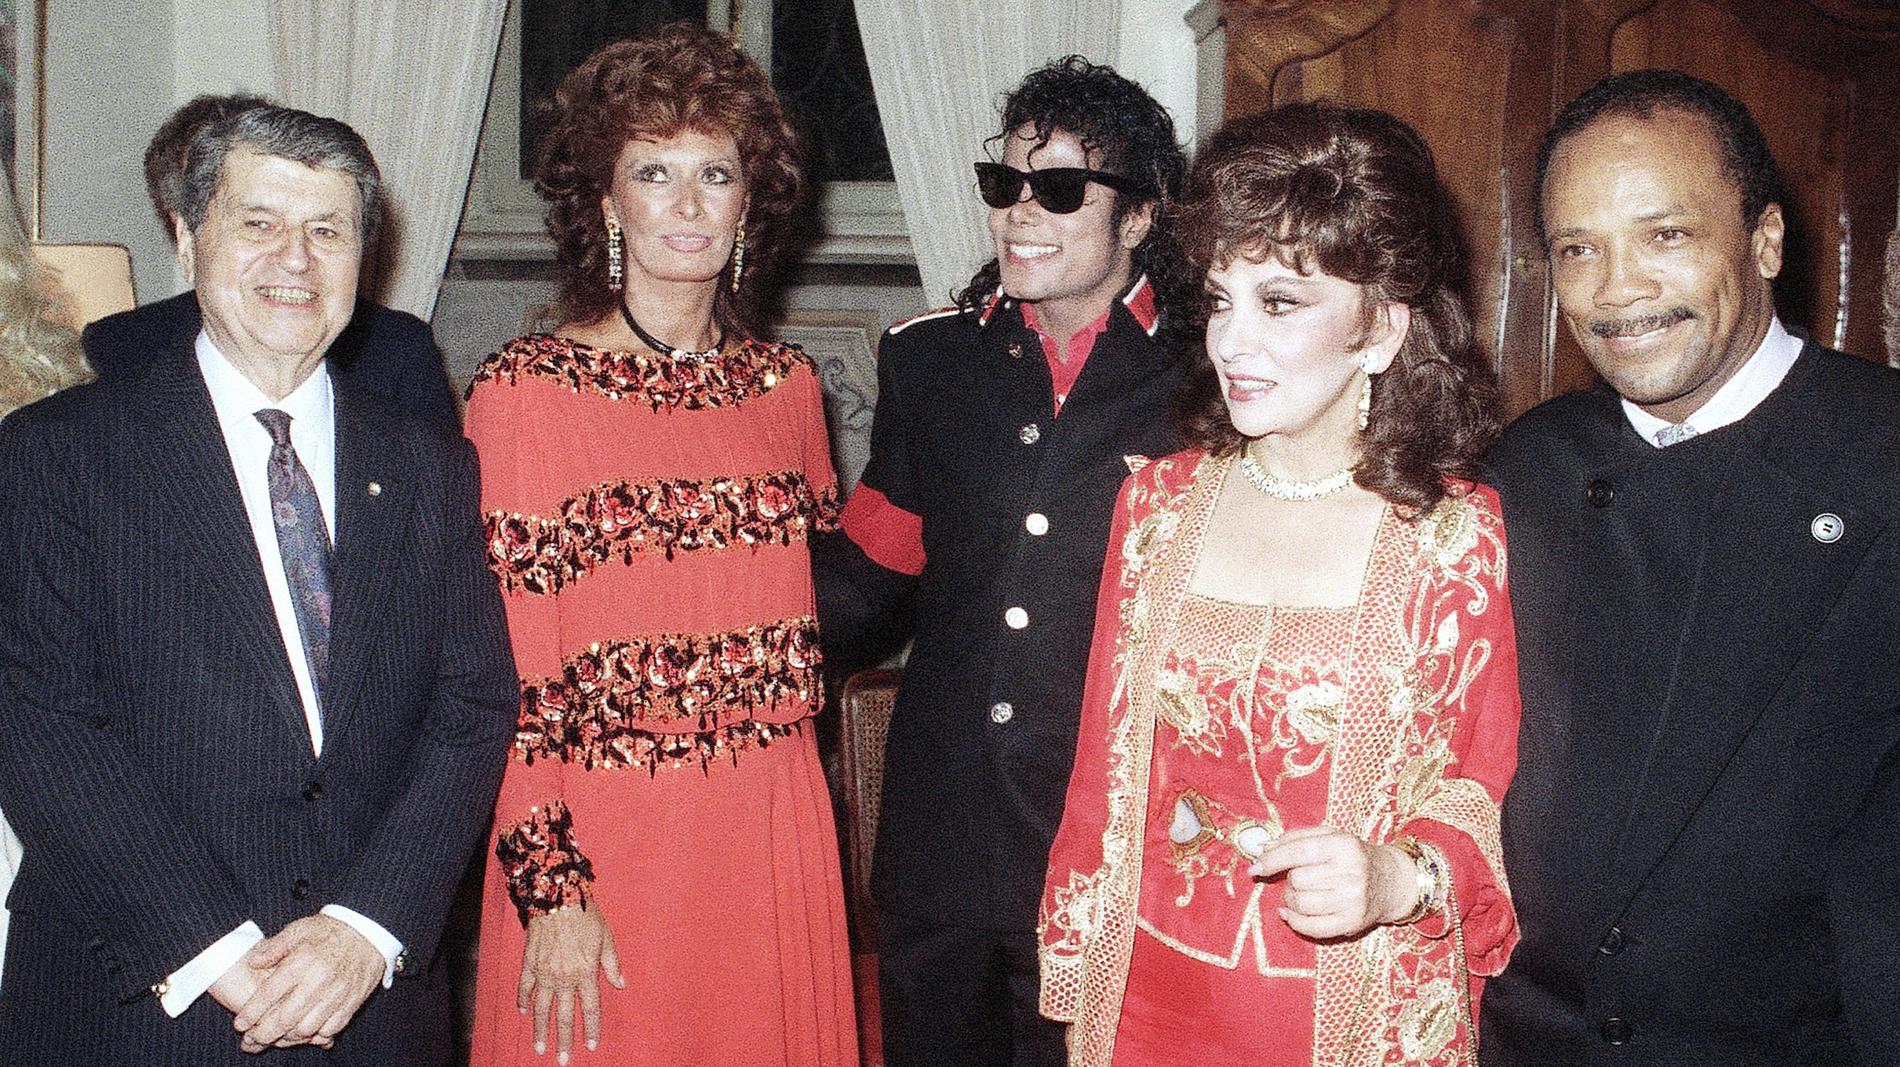 En av de sällsynta gånger de två italienska divorna Sophia Loren och Gina Lollobrigida poserade tillsammans på bild var när Michael Jackson deltog i ett party på amerikanska ambassaden i Rom 1988. Arkivbild.